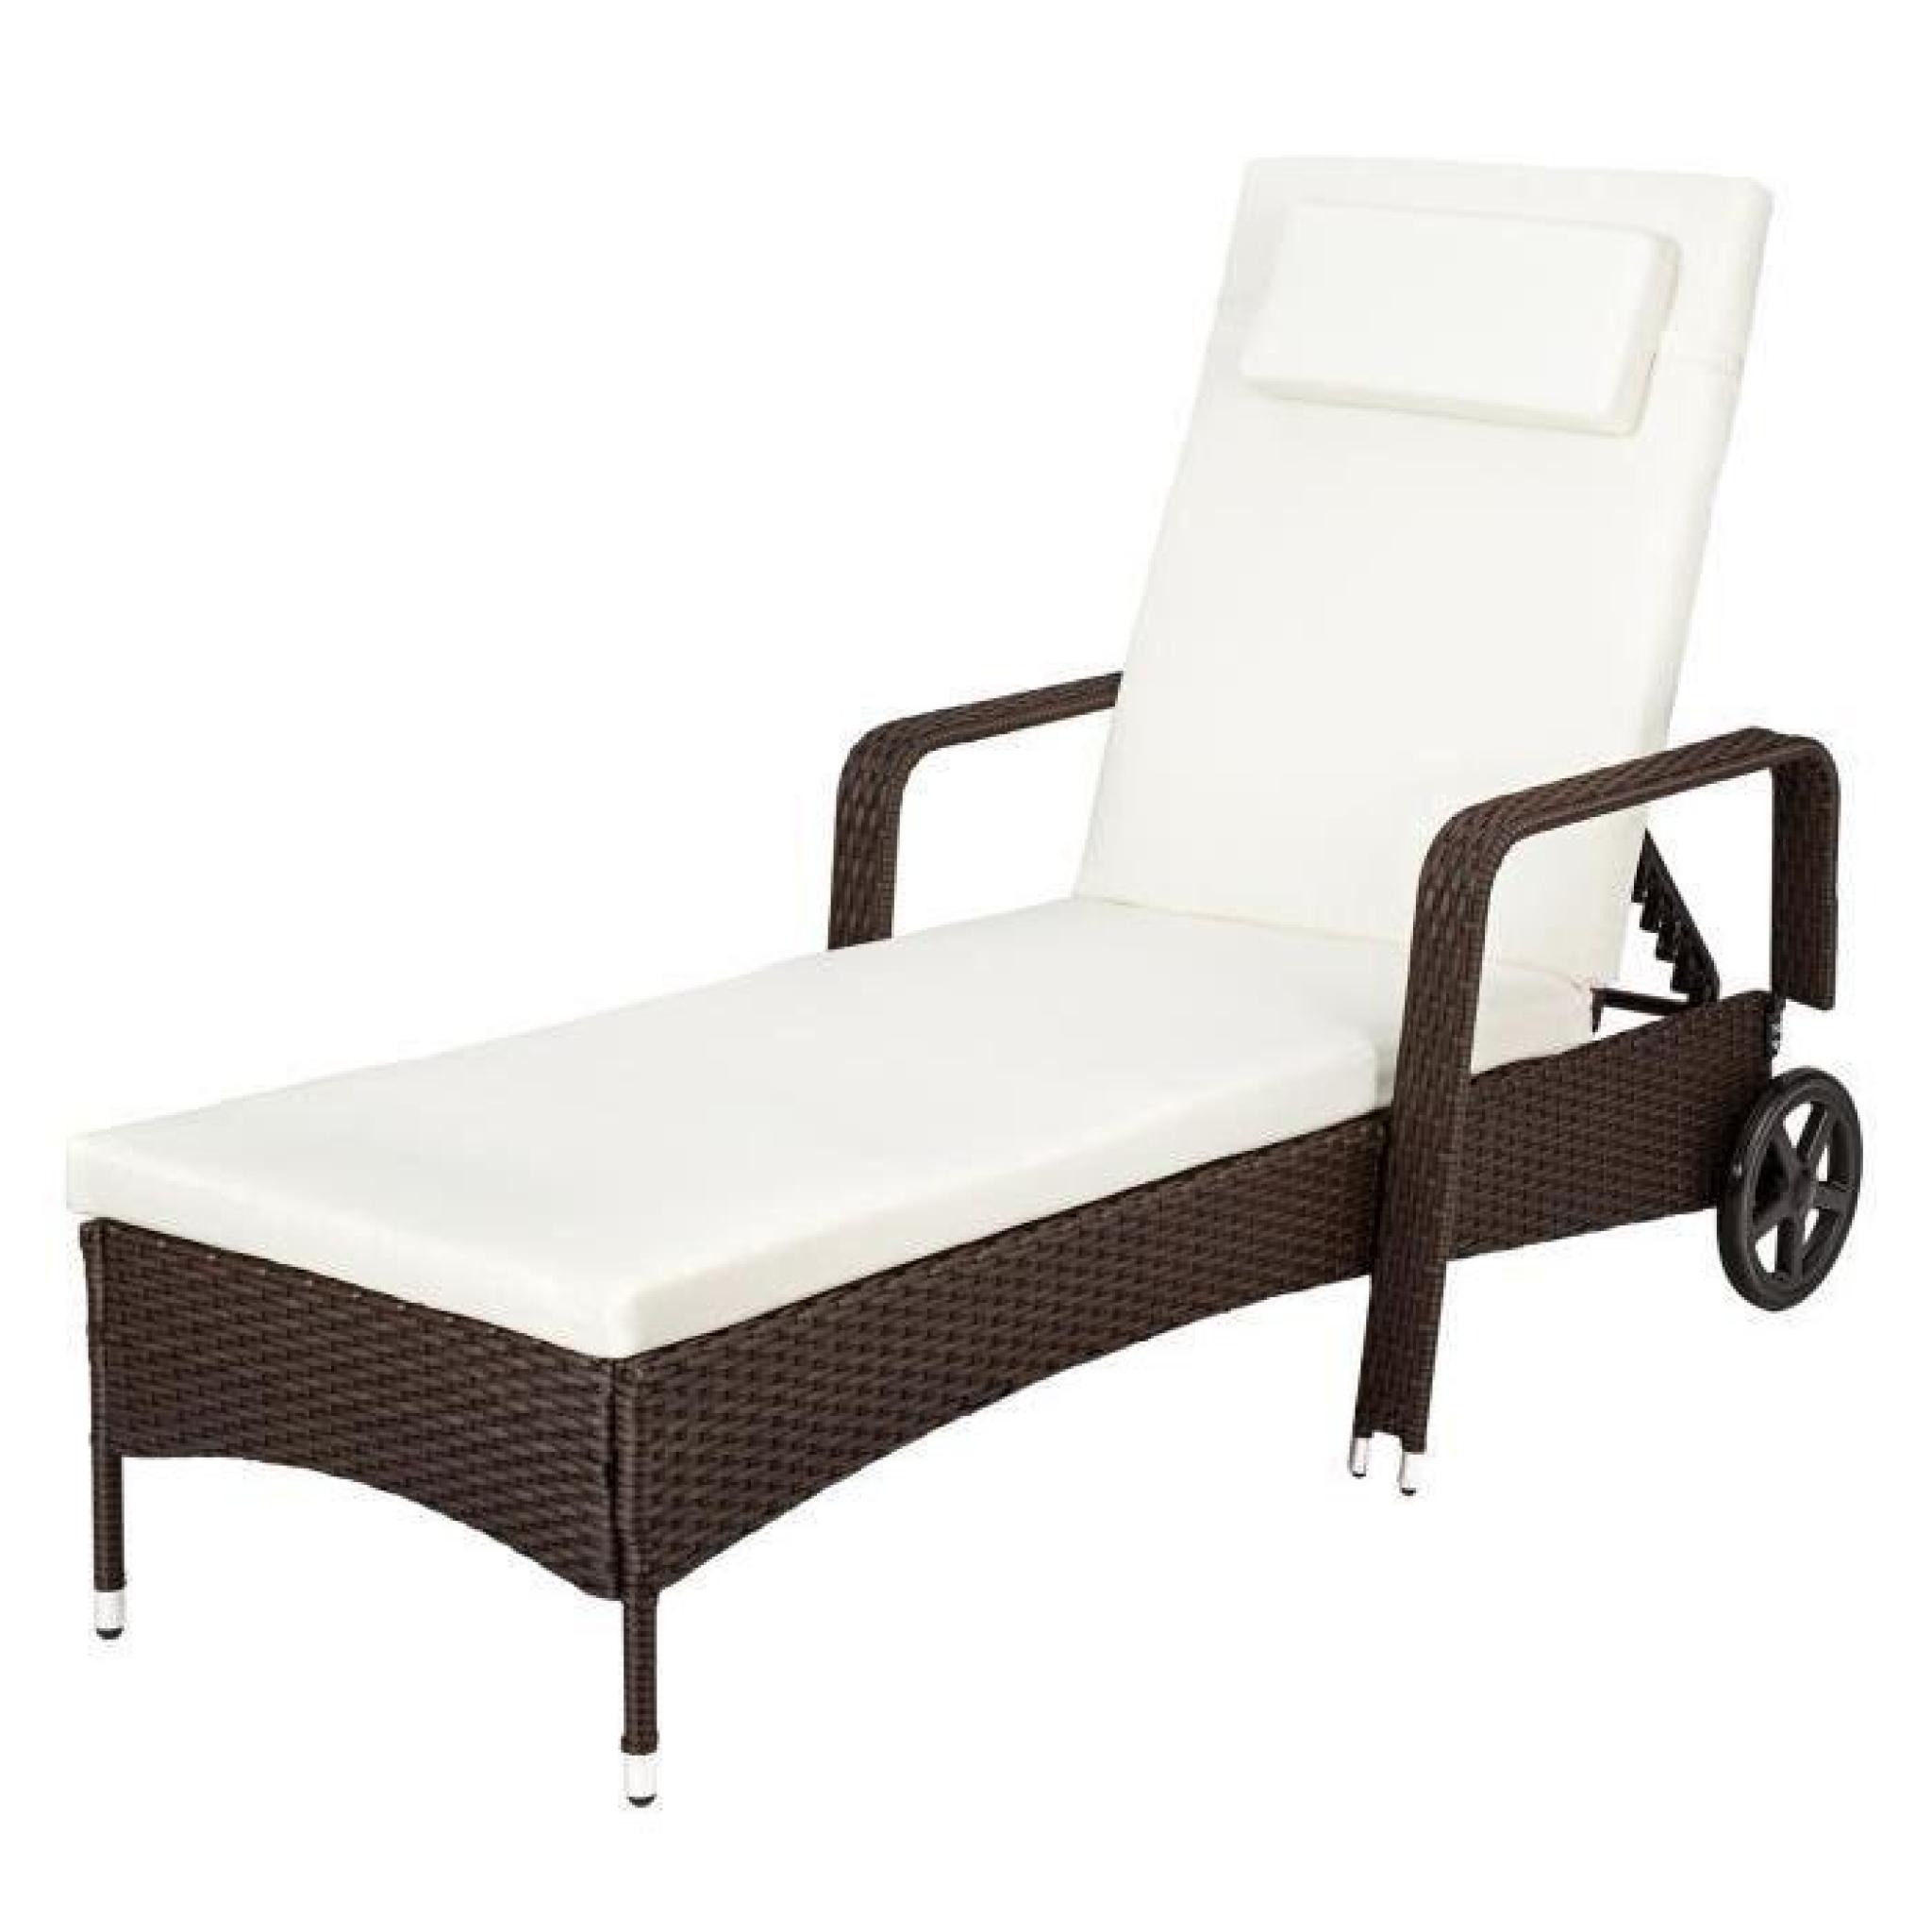 Chaise longue, Transat, Bain de soleil en Aluminium & Poly Rotin Marron TECTAKE + Table + 2 Sets de Housses + Protection Par 2